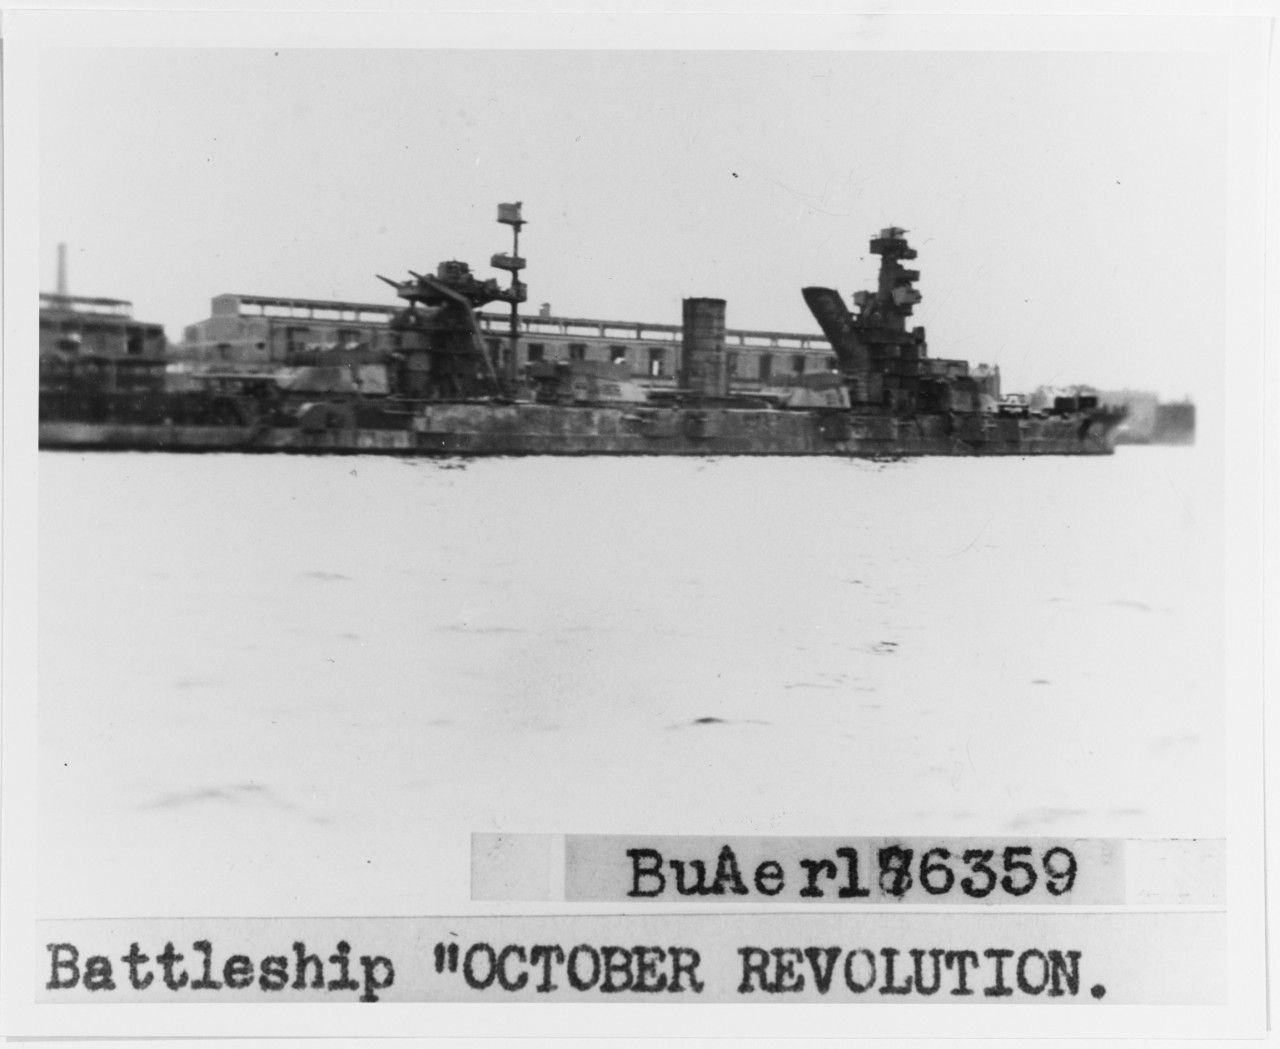 OKTIABRSKAYA REVOLUTIA "OCTOBER REVOLUTION" (Soviet Battleship, 1911, ex-GANGUT)